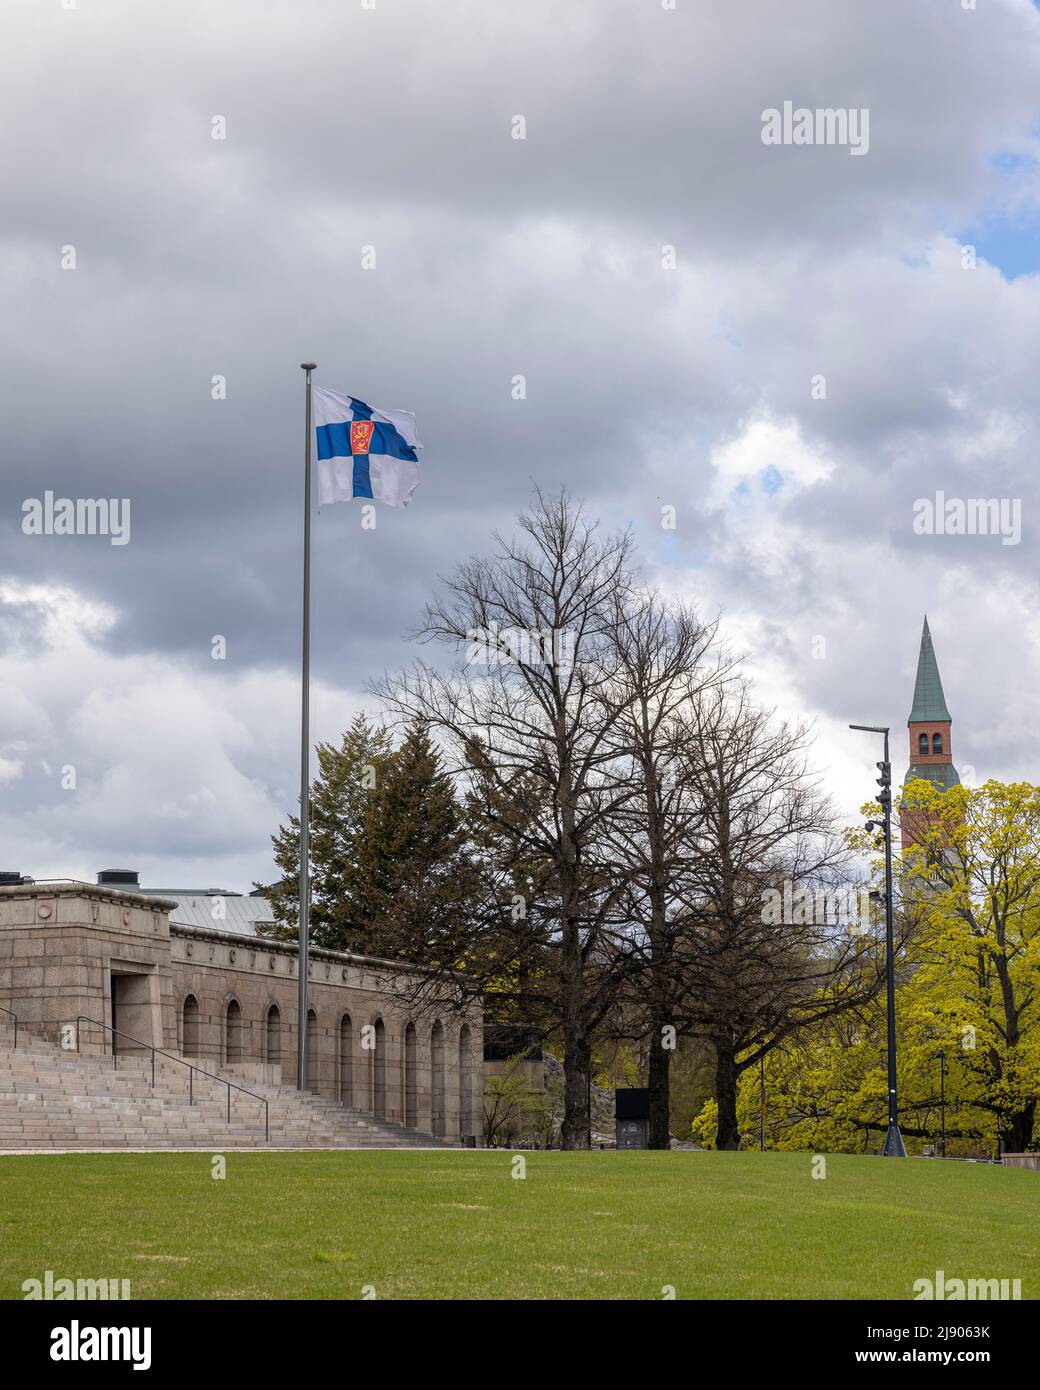 Drapeau du gouvernement finlandais en vol lors d'une journée de printemps venteuse Banque D'Images